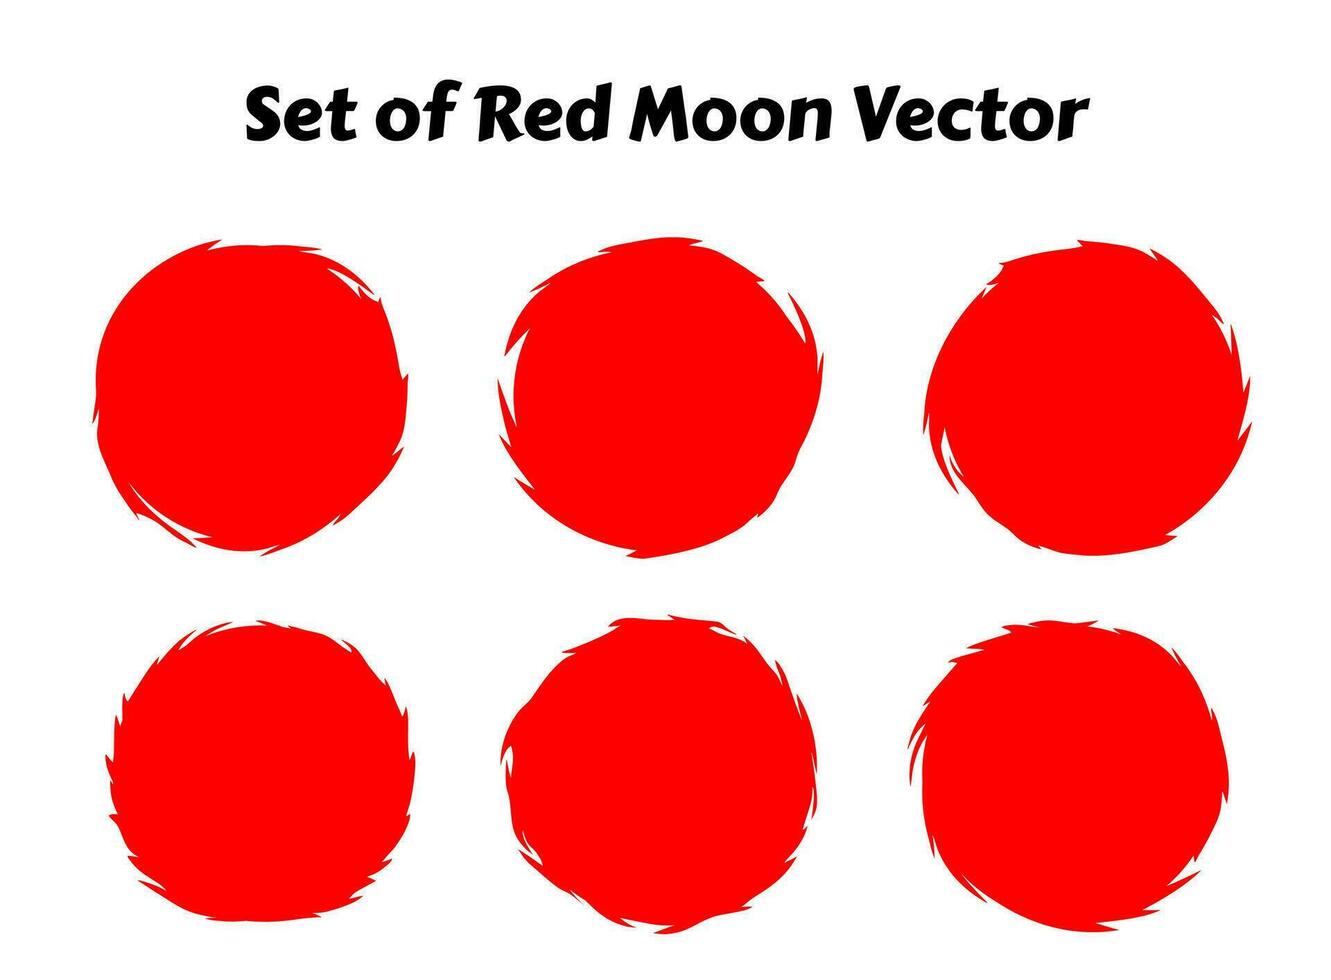 rouge lune vecteur illustration. Japonais rouge lune abstrait vecteur. rouge cercle abstrait vecteur illustration. abstrait cercle.